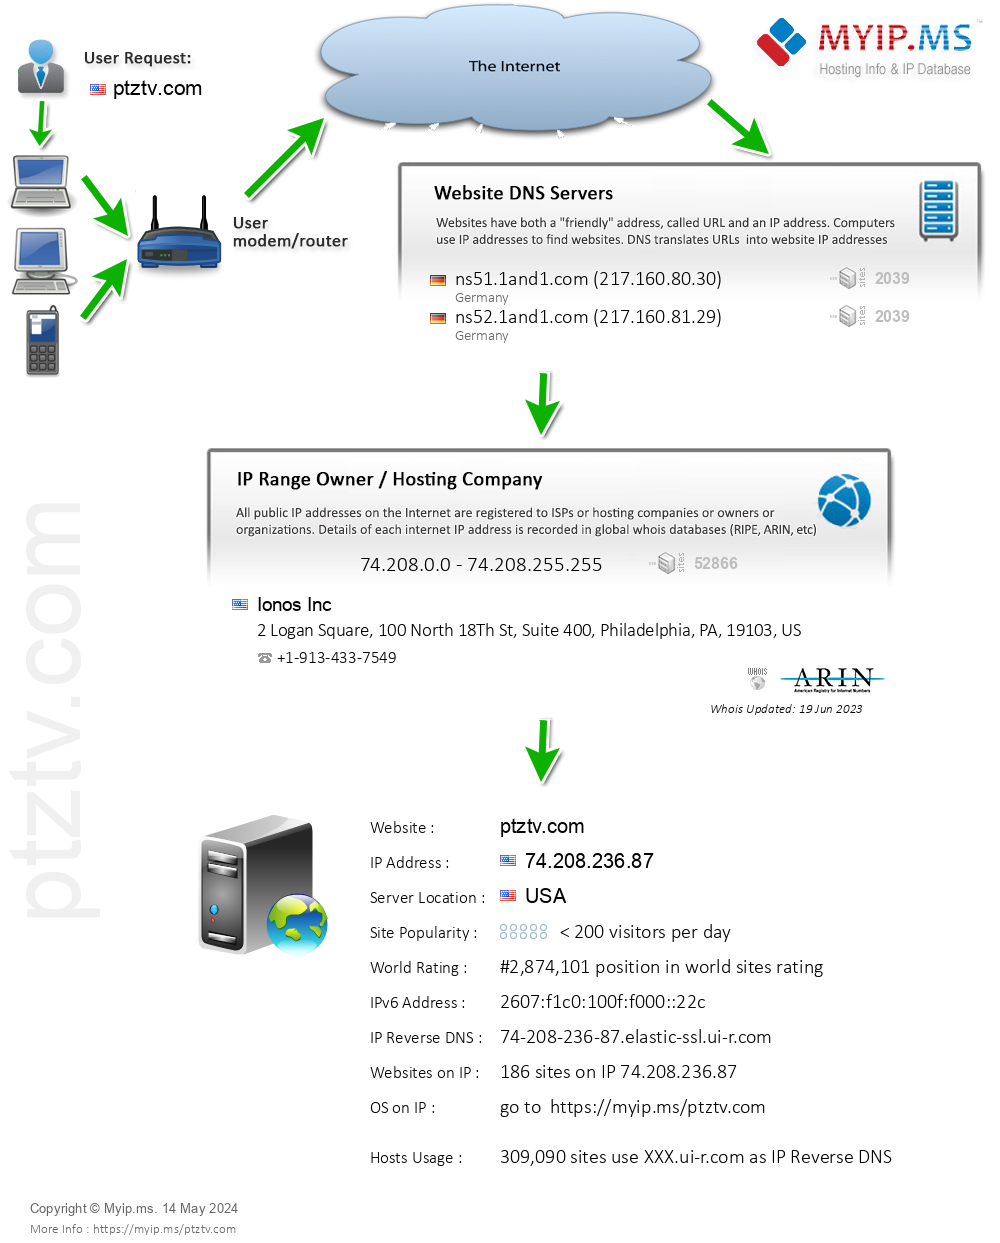 Ptztv.com - Website Hosting Visual IP Diagram